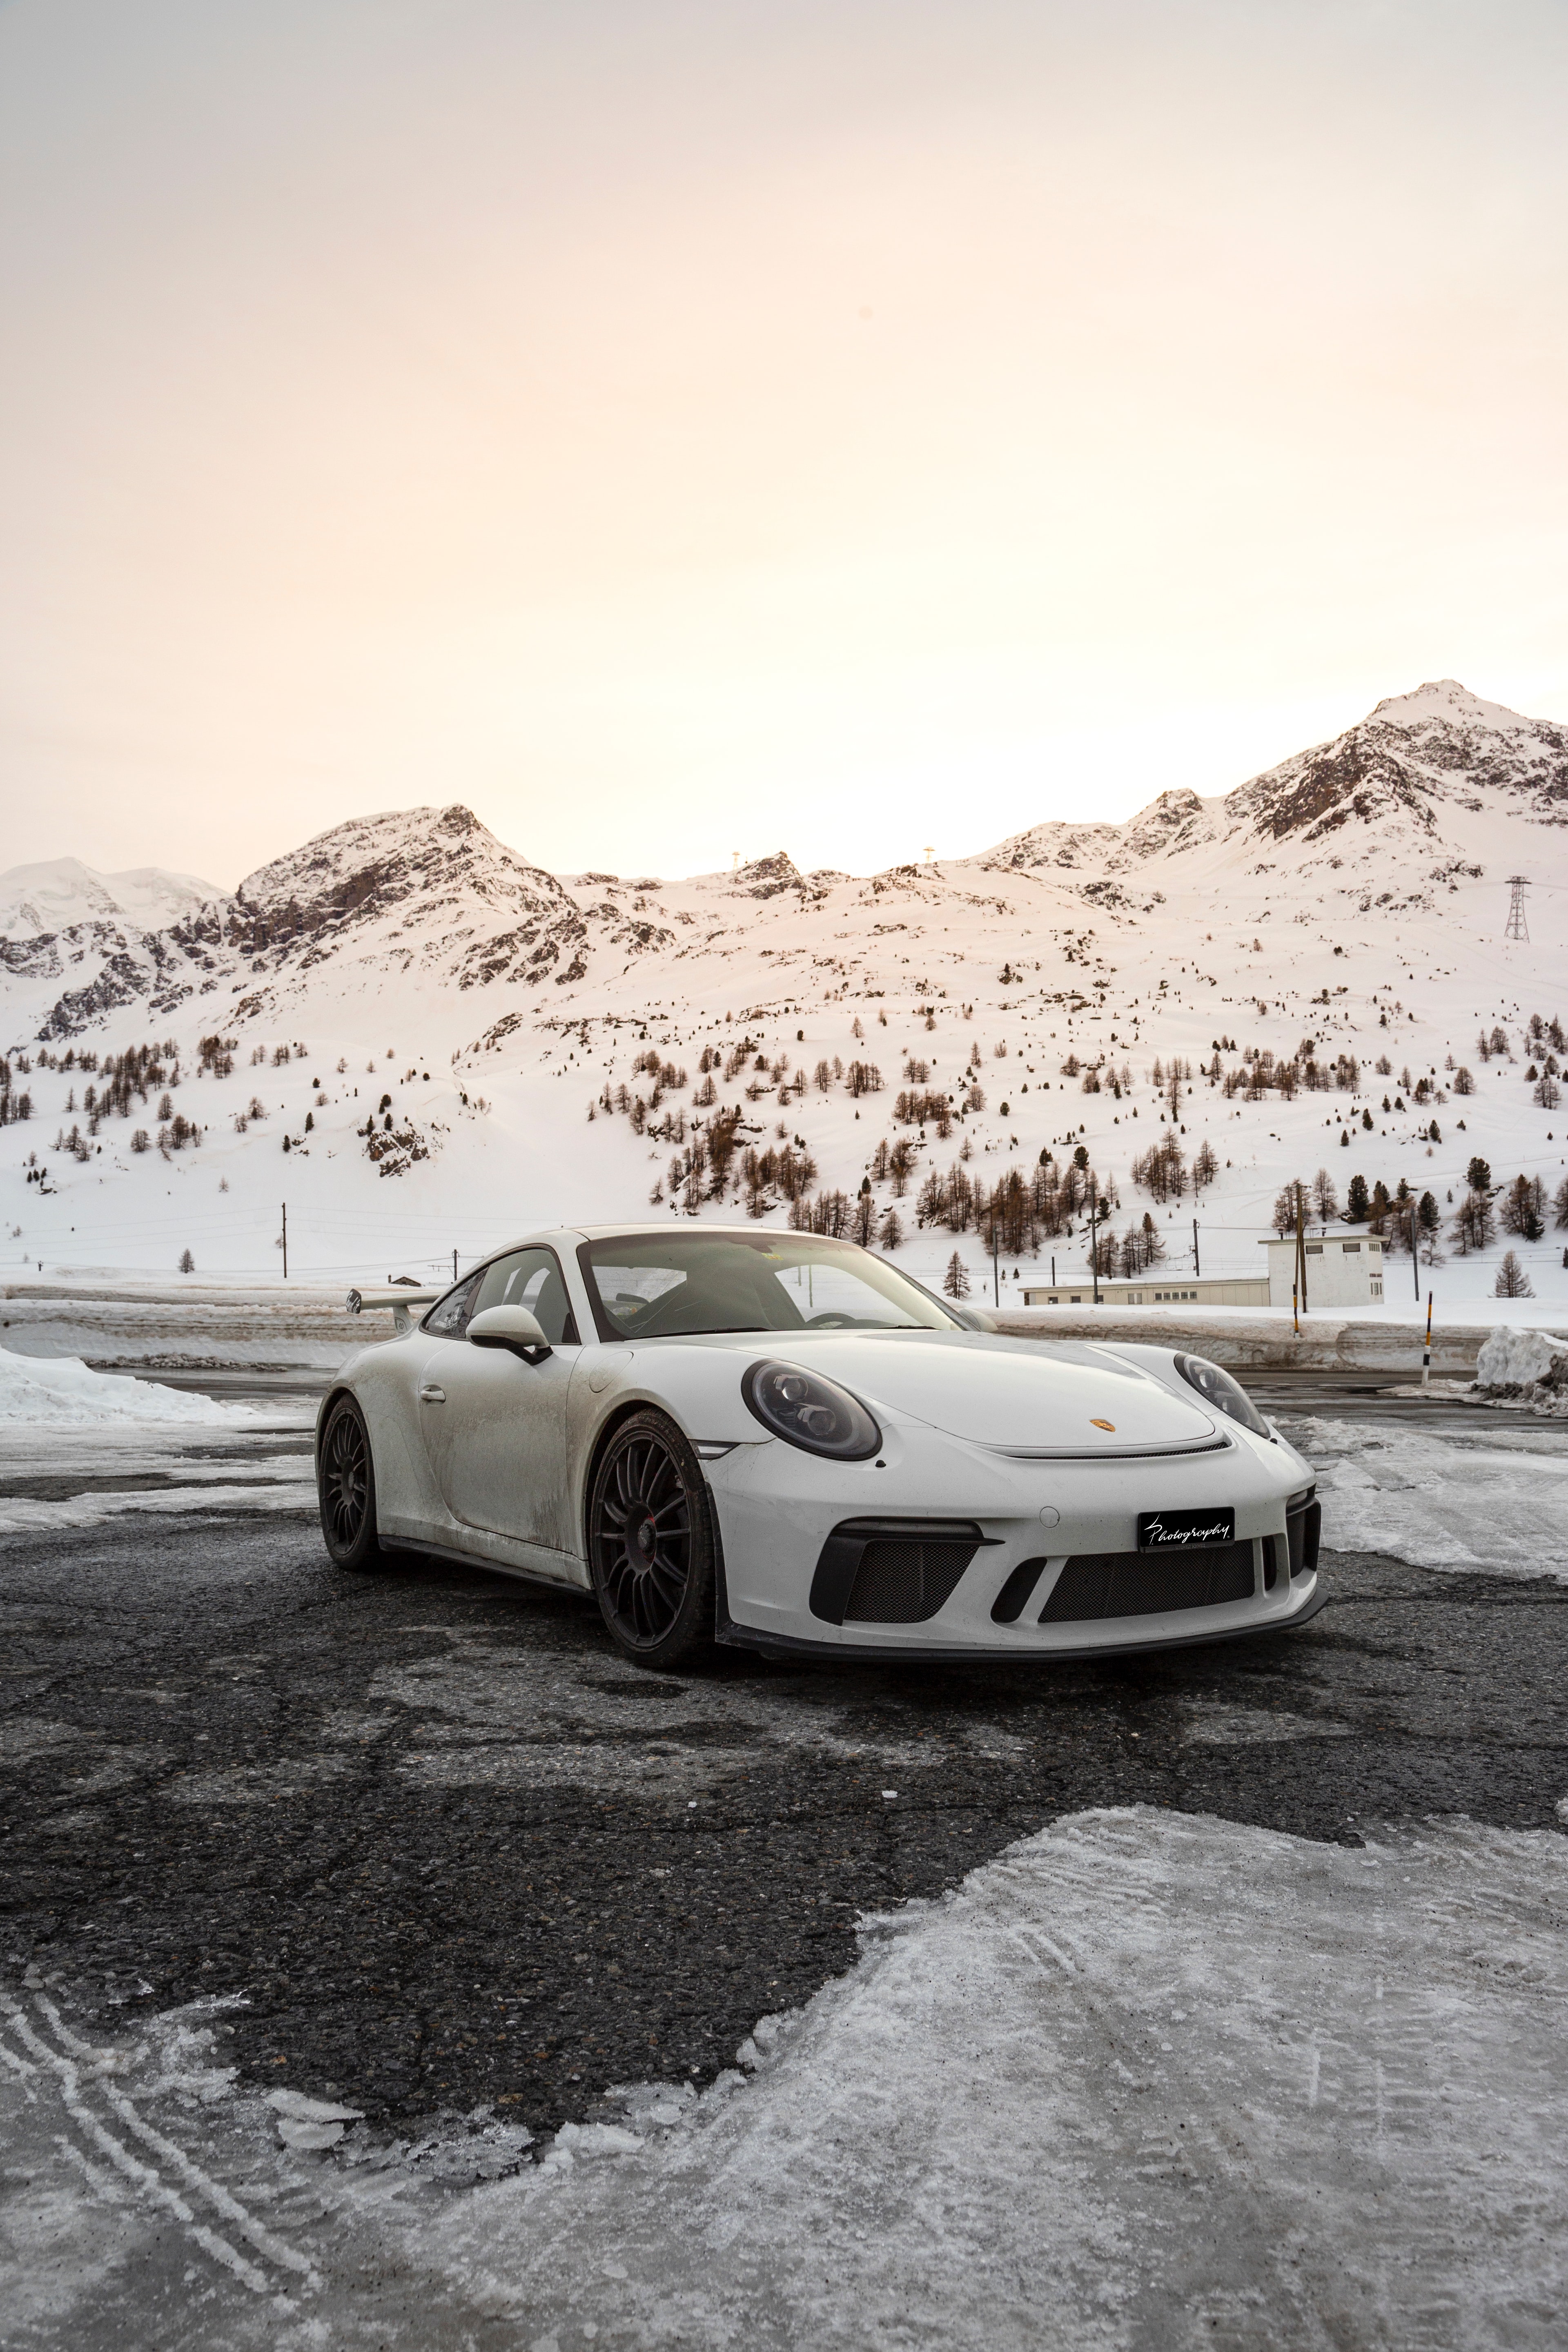 Los mejores fondos de pantalla de Porsche para la pantalla del teléfono